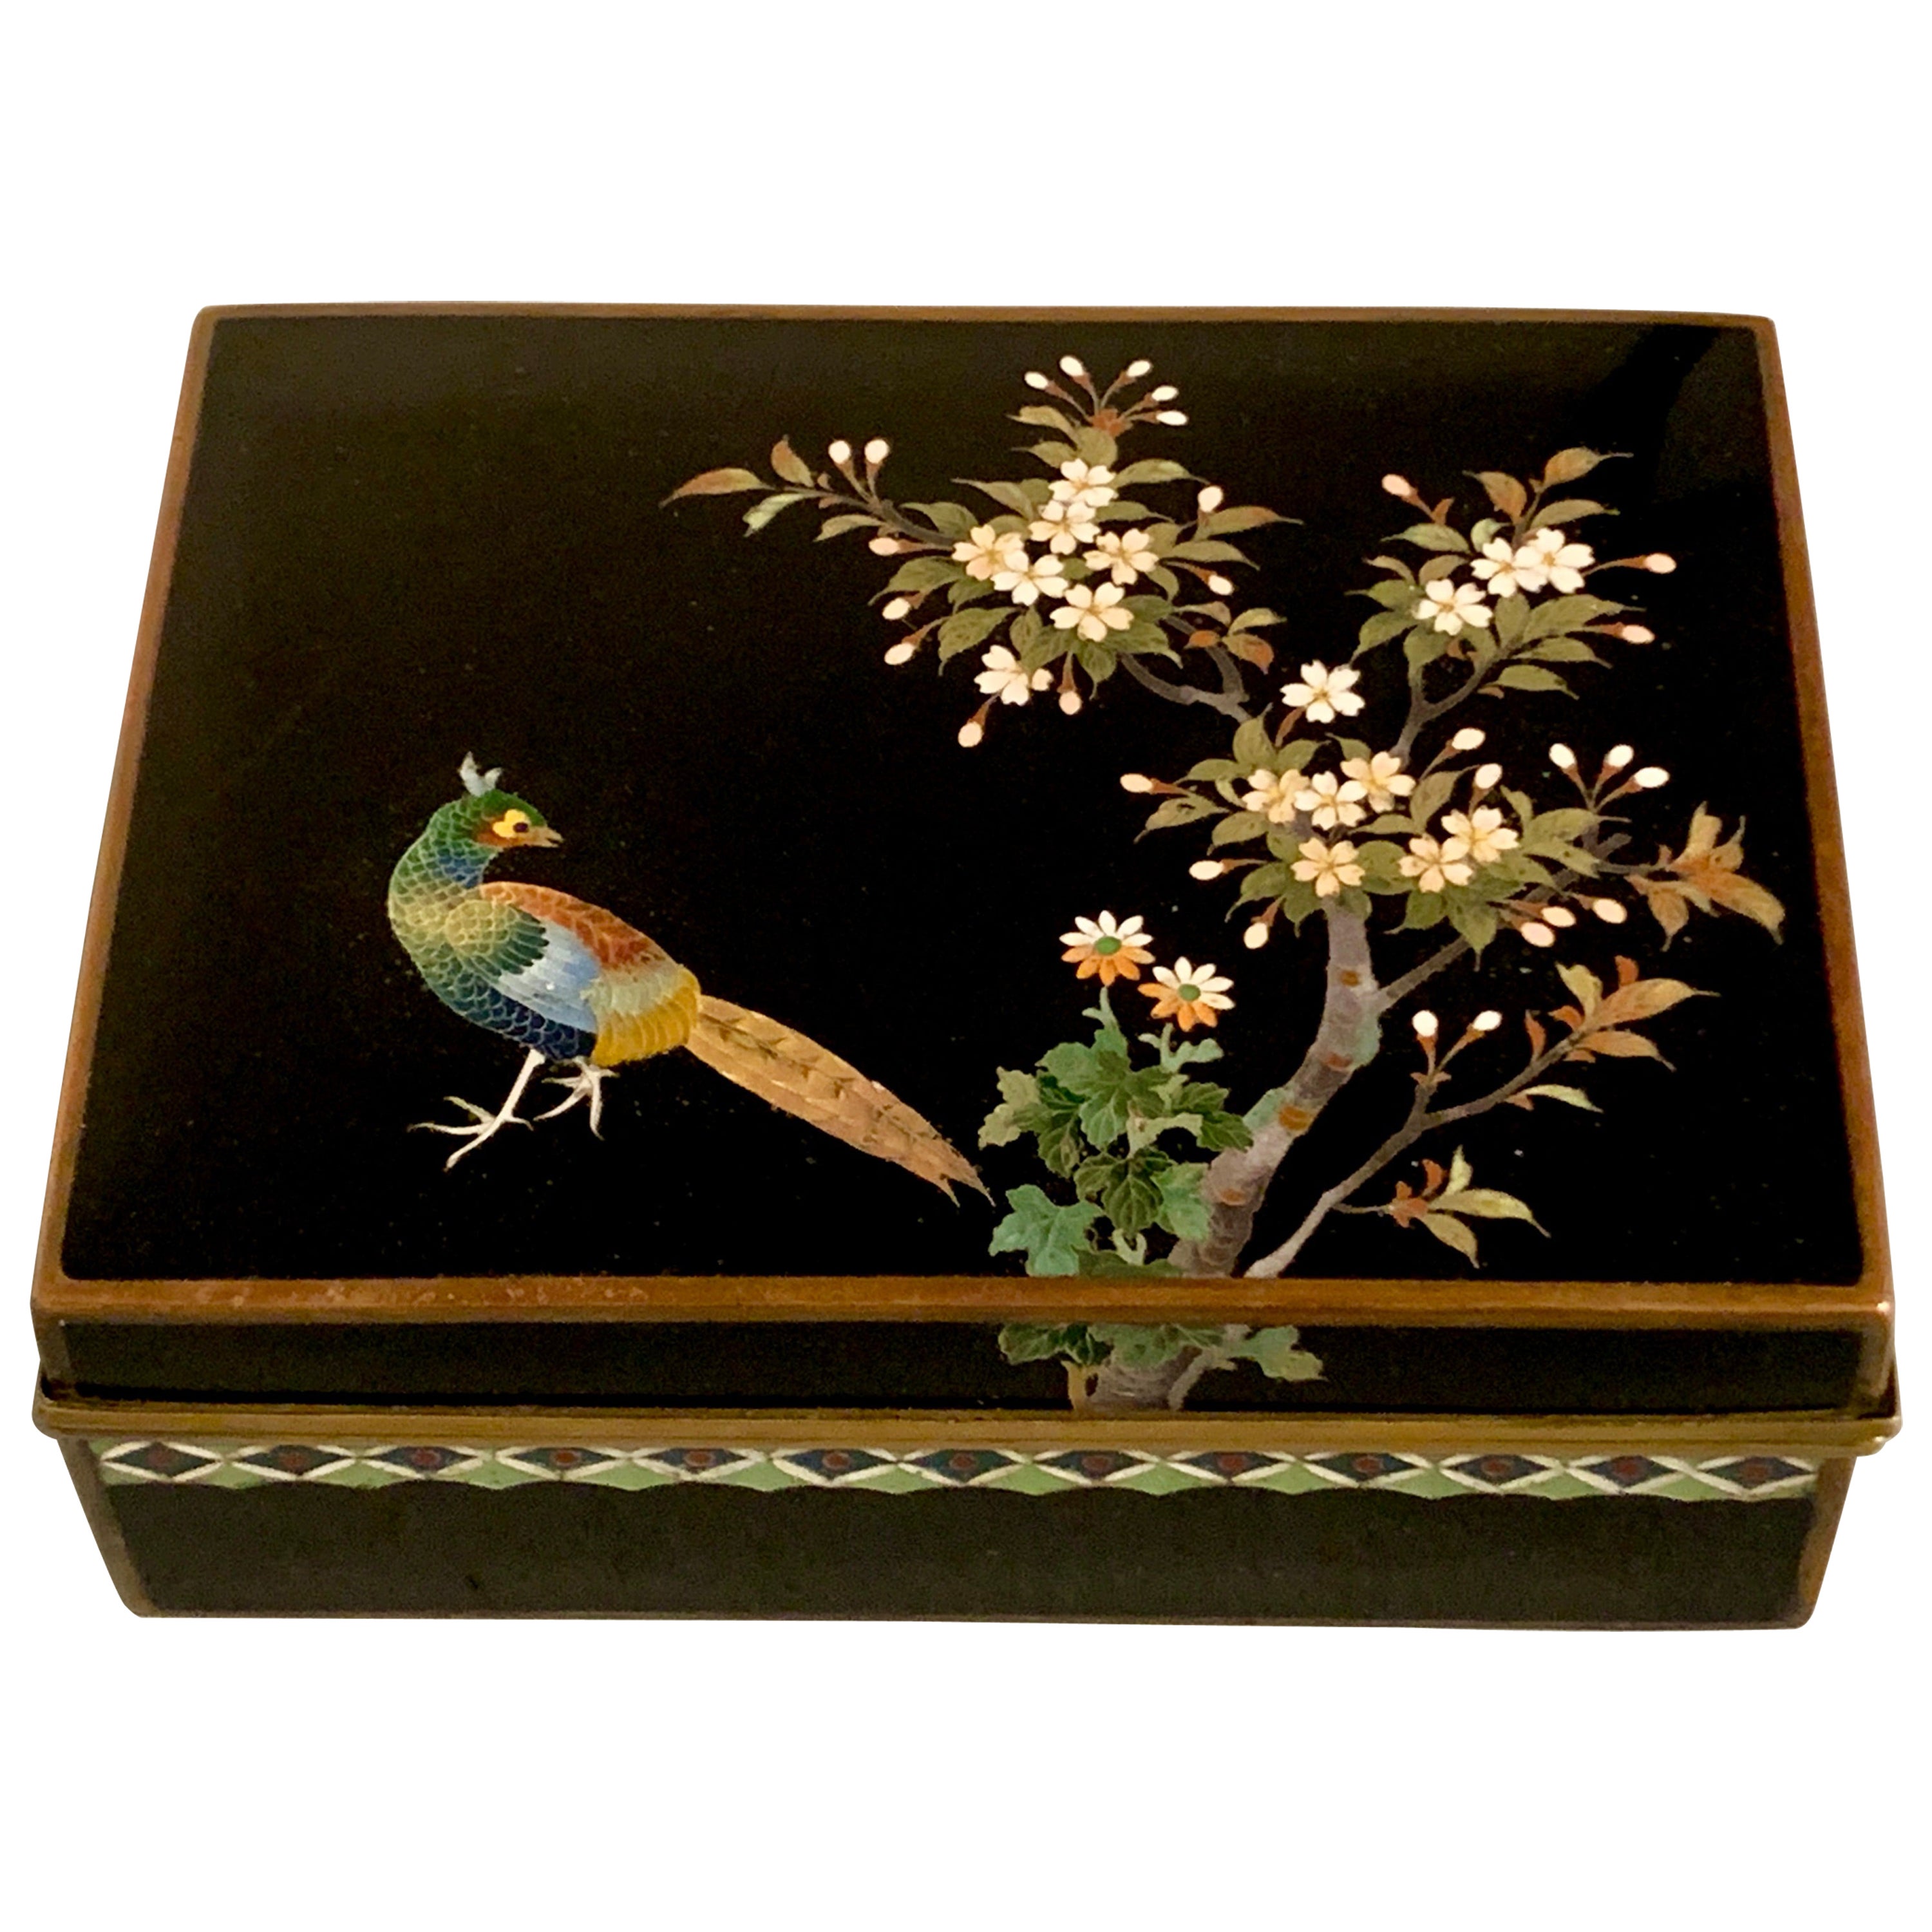 Boîte japonaise en cloisonné par Inaba, période Meiji, vers 1900, Japon